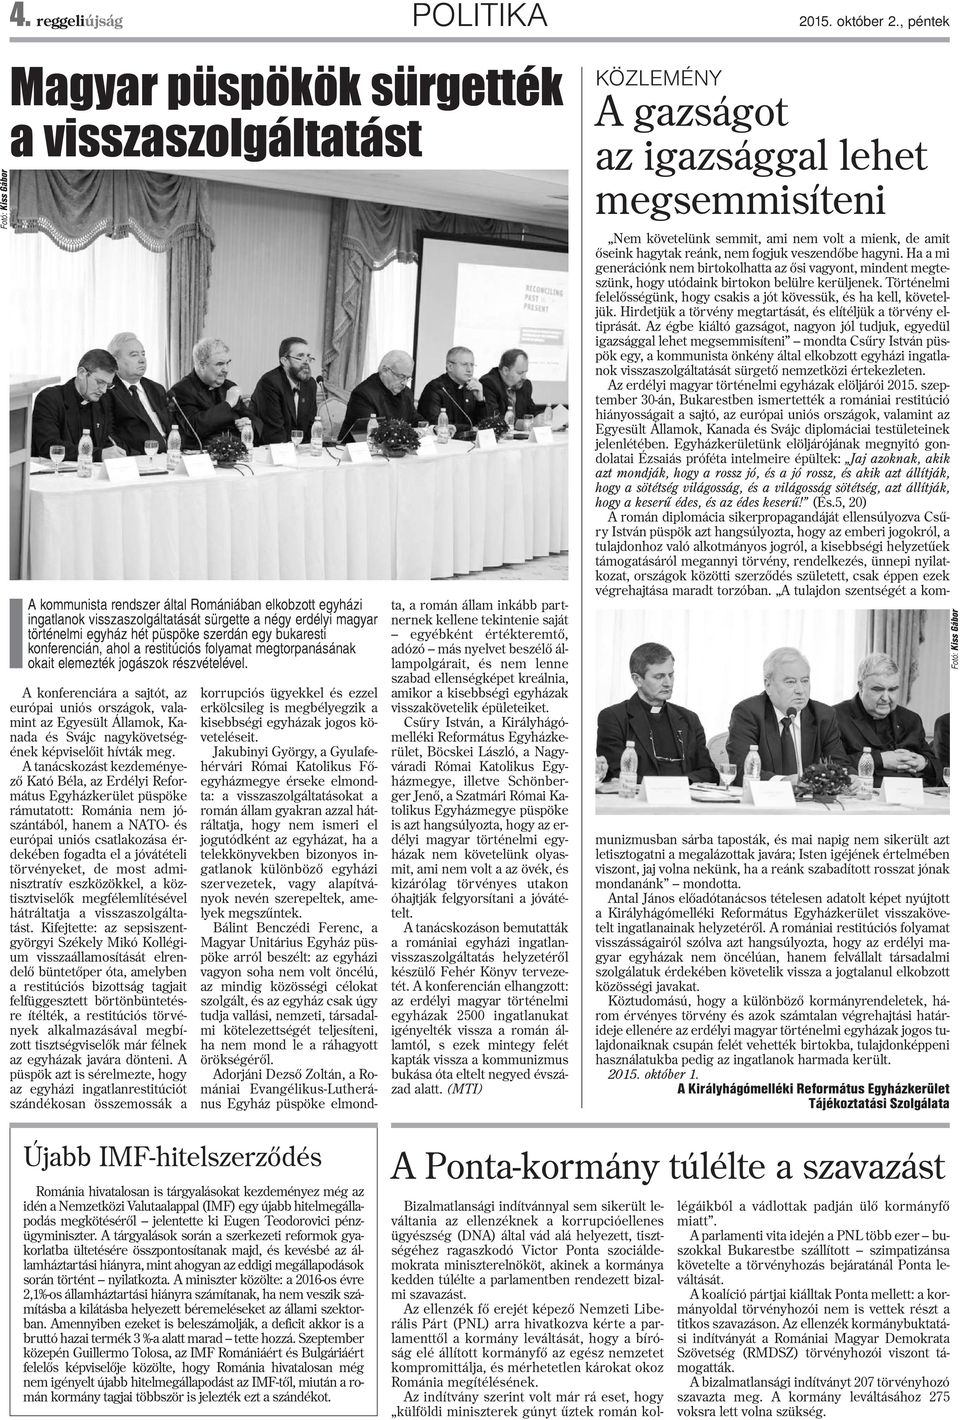 egyház hét püspöke szerdán egy bukaresti konferencián, aho a restitúciós foyamat megtorpanásának okait eemezték jogászok részvéteéve.